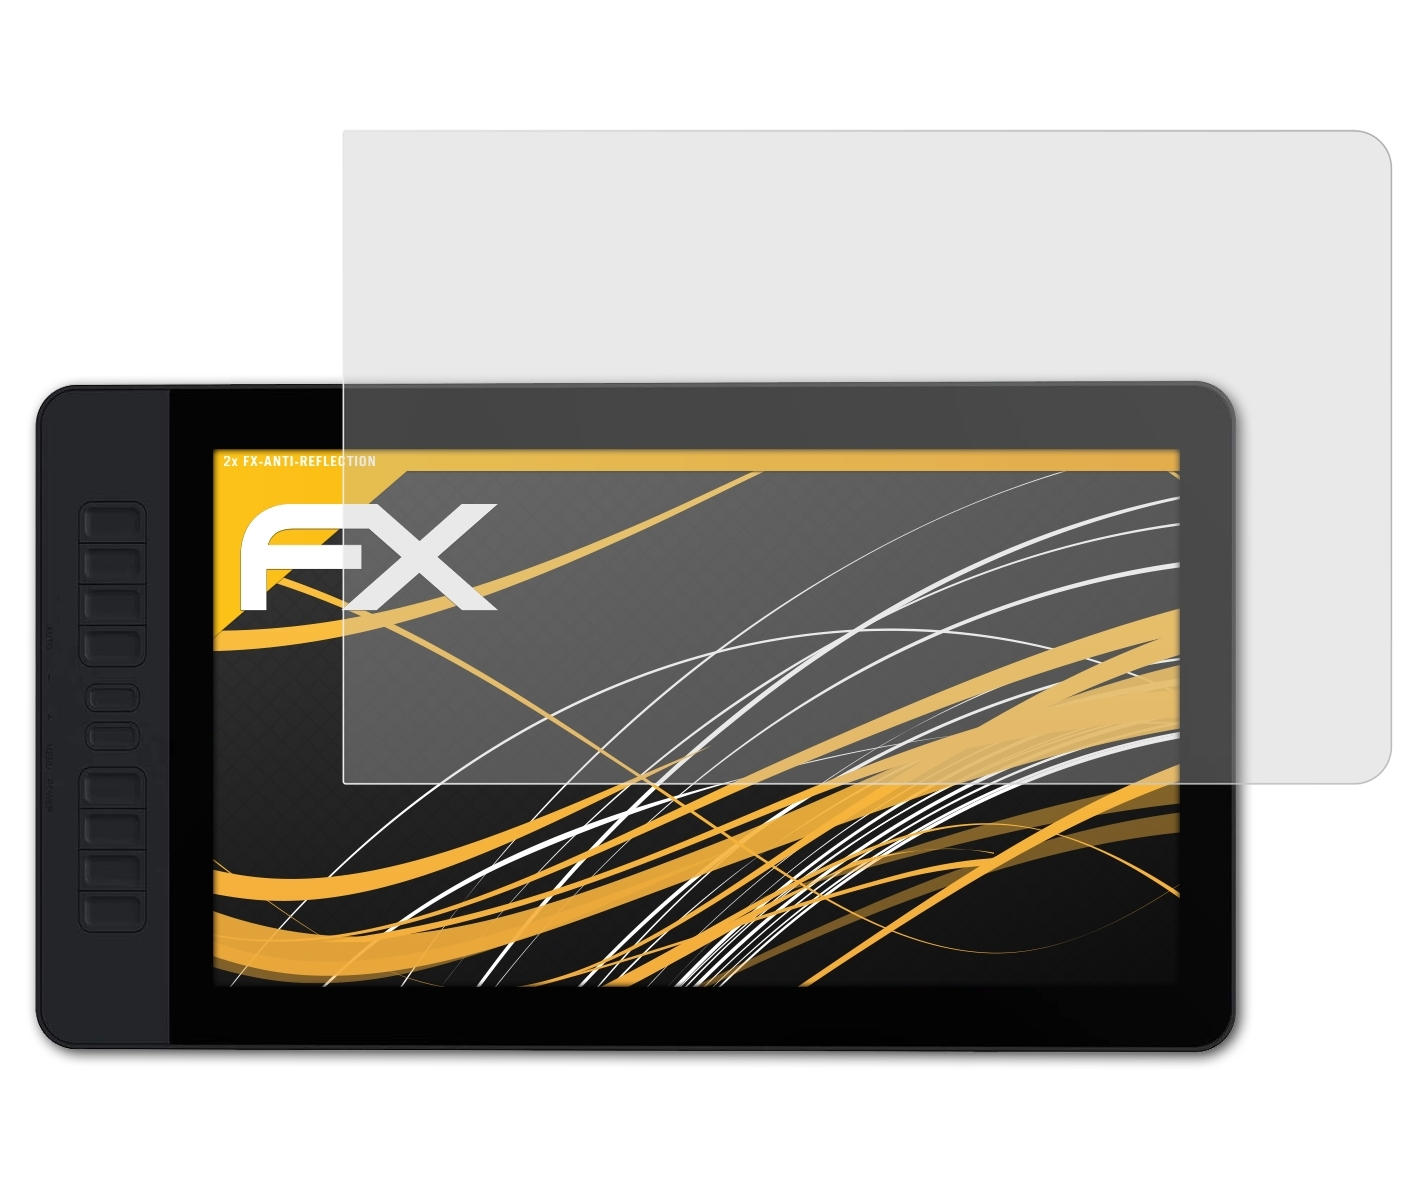 ATFOLIX Gaomon 2x Displayschutz(für FX-Antireflex PD1561)